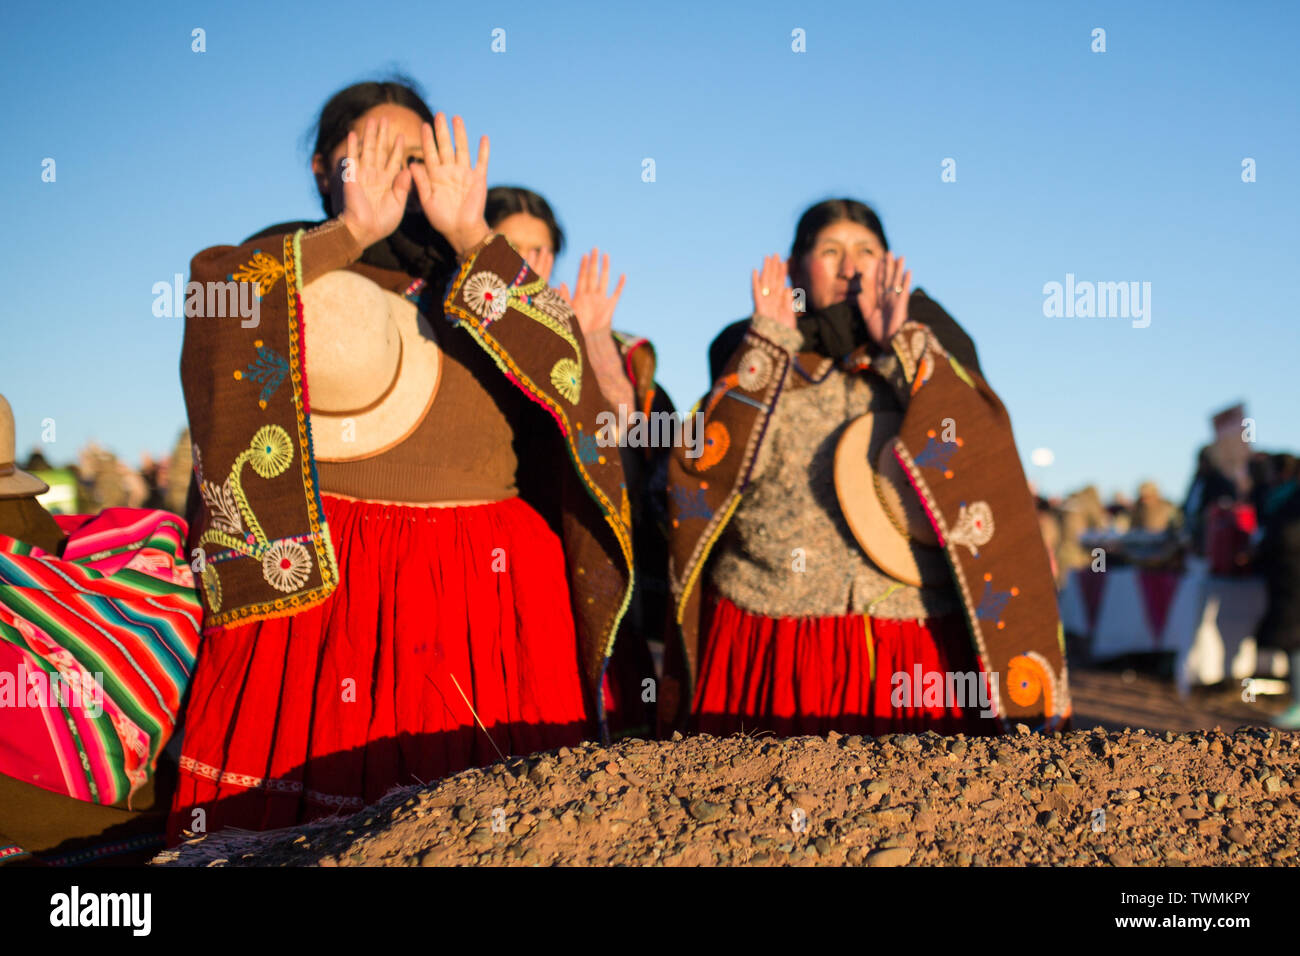 Tiwanaku, Bolivien. Juni, 2019 21. Indigene Frauen grüße die aufgehende Sonne während der wintersonnenwende Ritual am historischen Ort von Tiwanaku. Aymaras feiern auch die Anfang des Jahres mit der Sonnenwende. Credit: Gaston Brito/dpa/Alamy leben Nachrichten Stockfoto